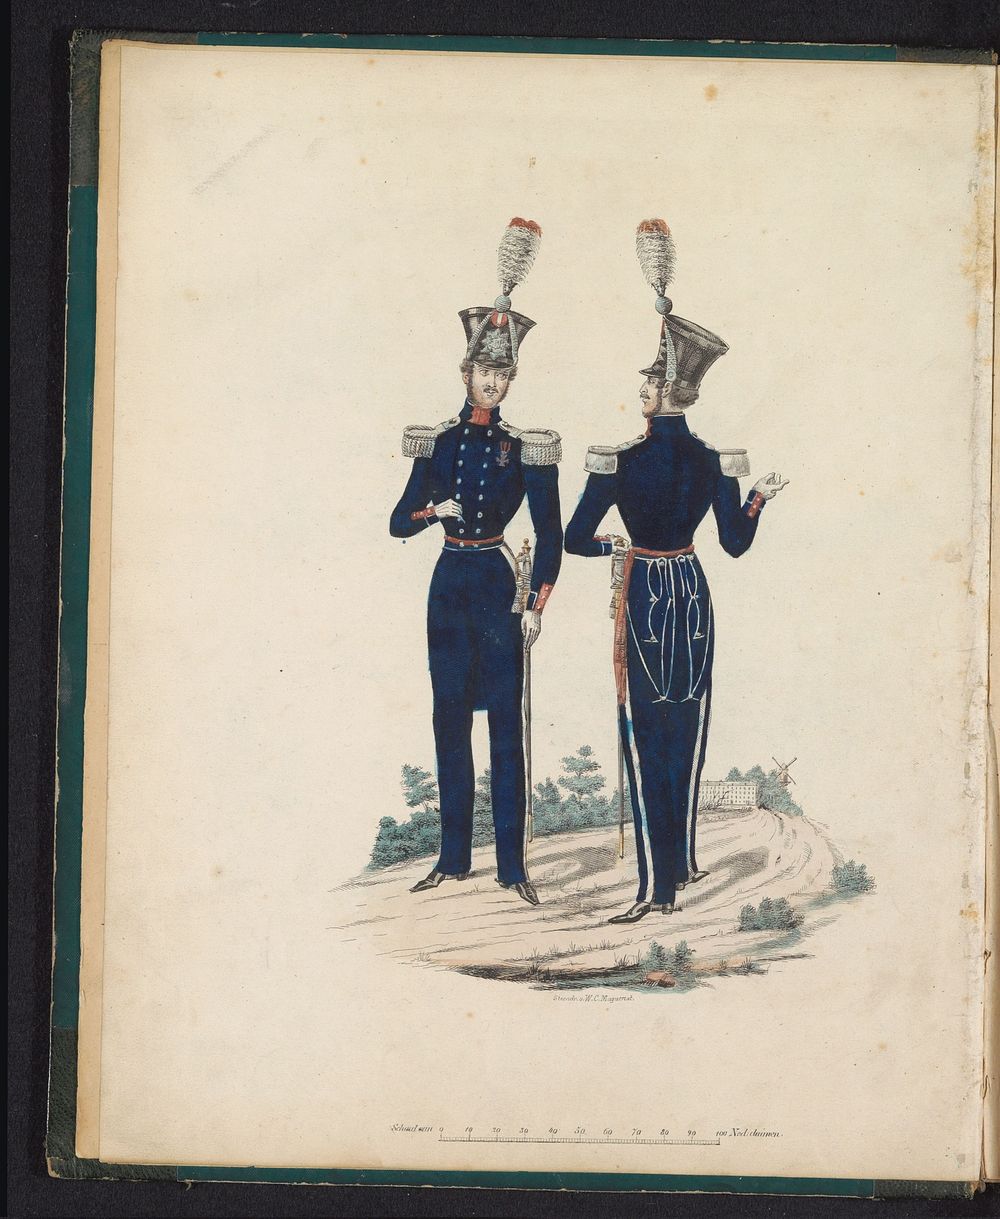 Uniform voor officieren van de schutterij, 1845 (1845) by Willem Charles Magnenat and Louis Salomon Leman